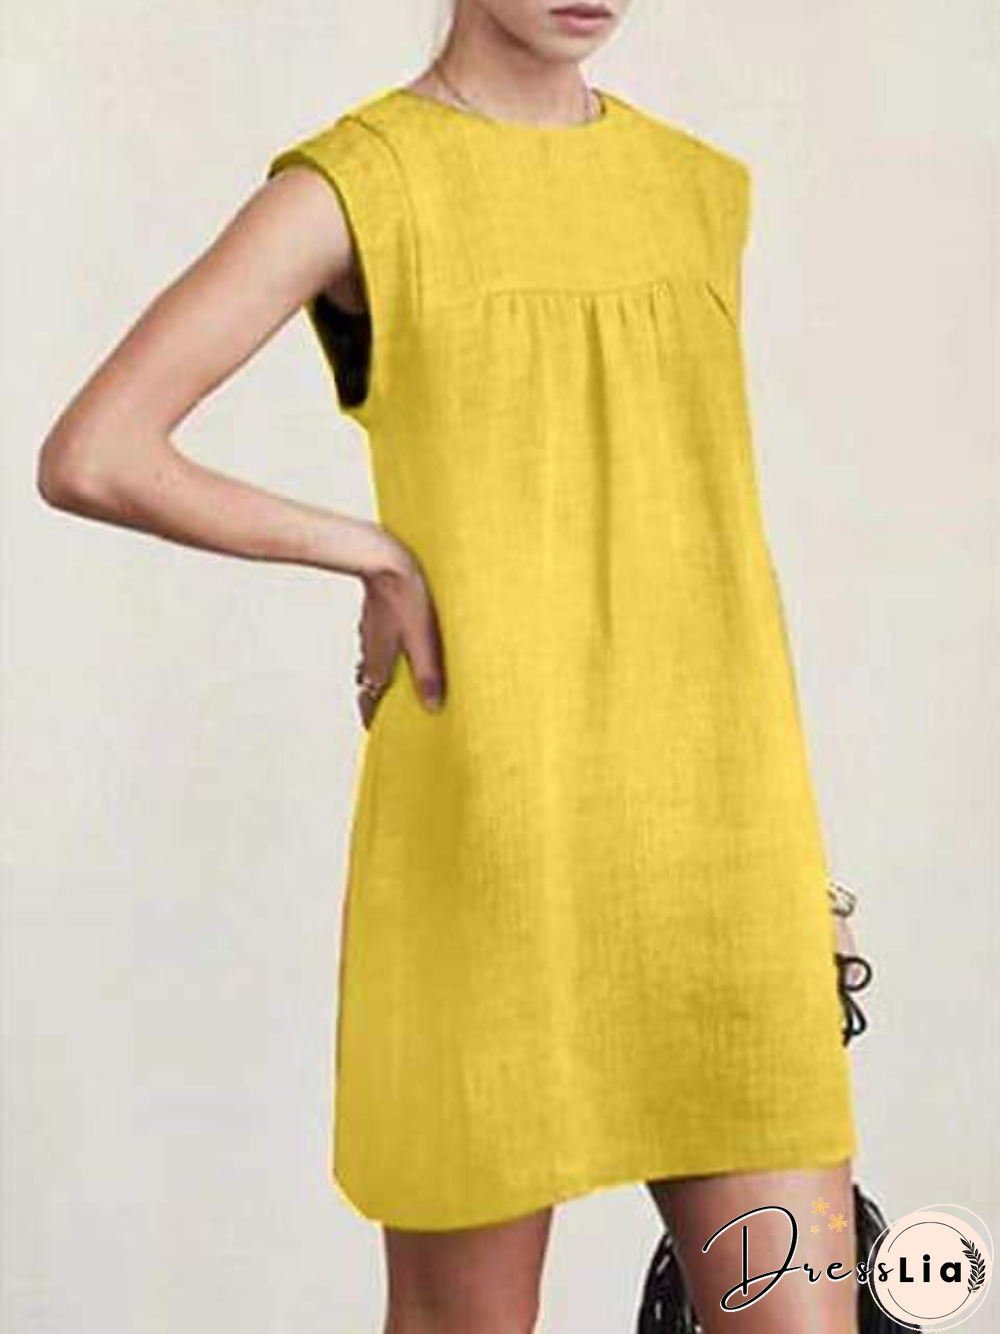 Women's Cotton Linen Sleeveless DressSolid Color Dress Knee Length Summer Daily Wear